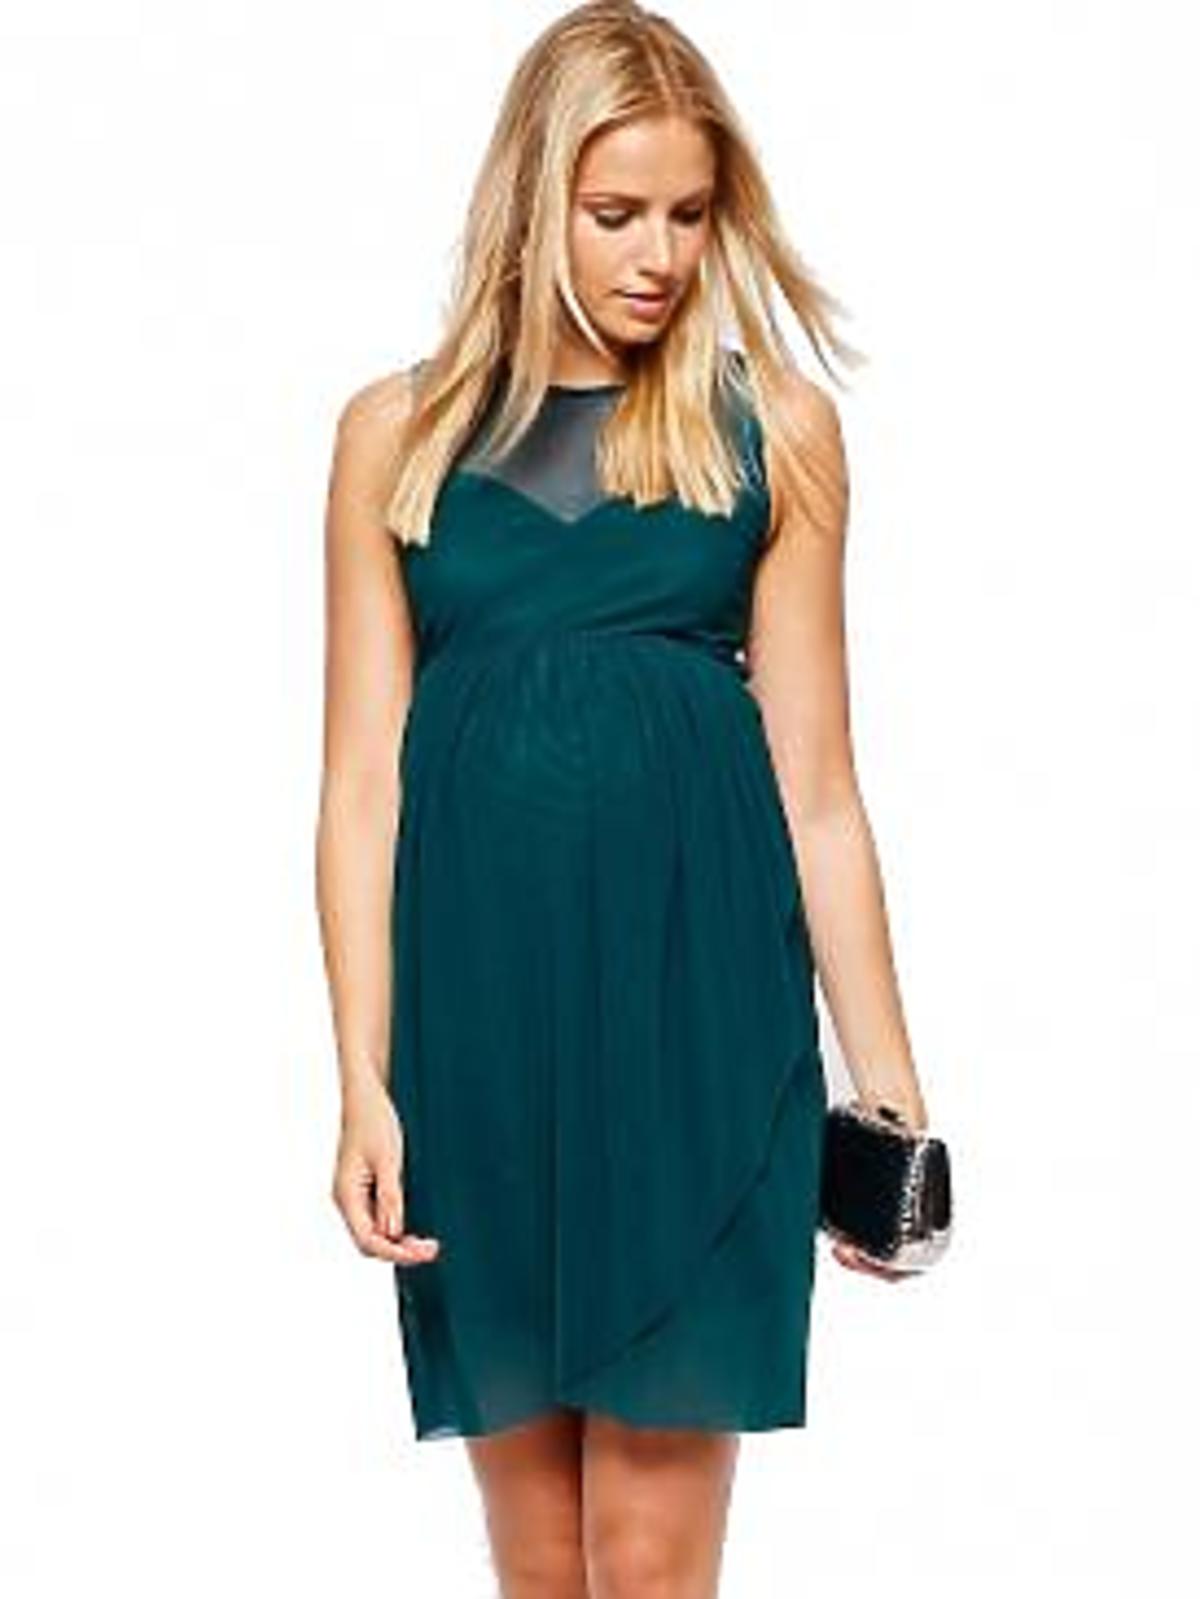 Zielona sukienka na wesele dla kobiety w ciąży, asos.com 220zł